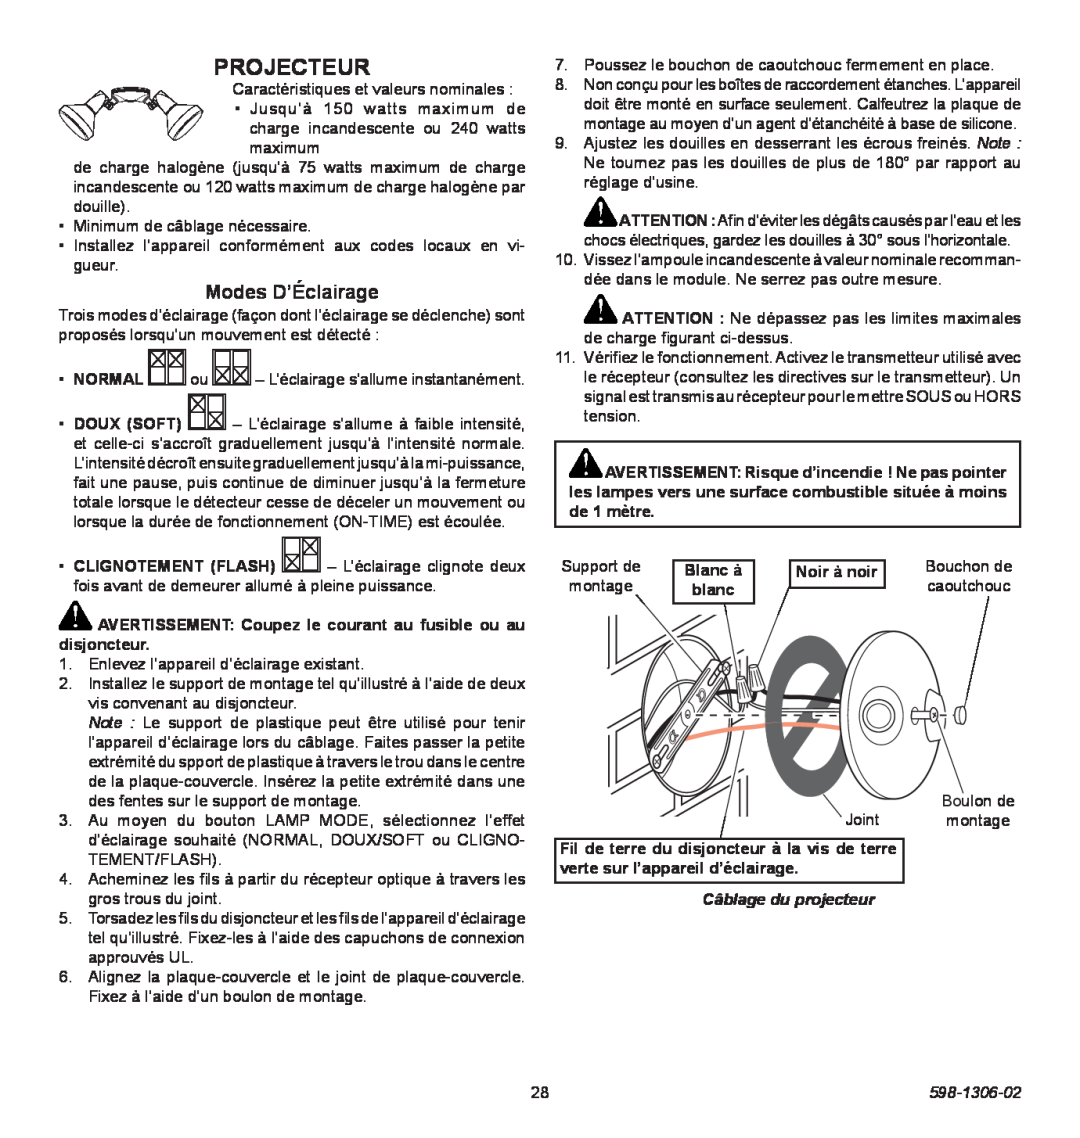 Heath Zenith 598-1306-02 manual Projecteur, Modes D’Éclairage, Câblage du projecteur 